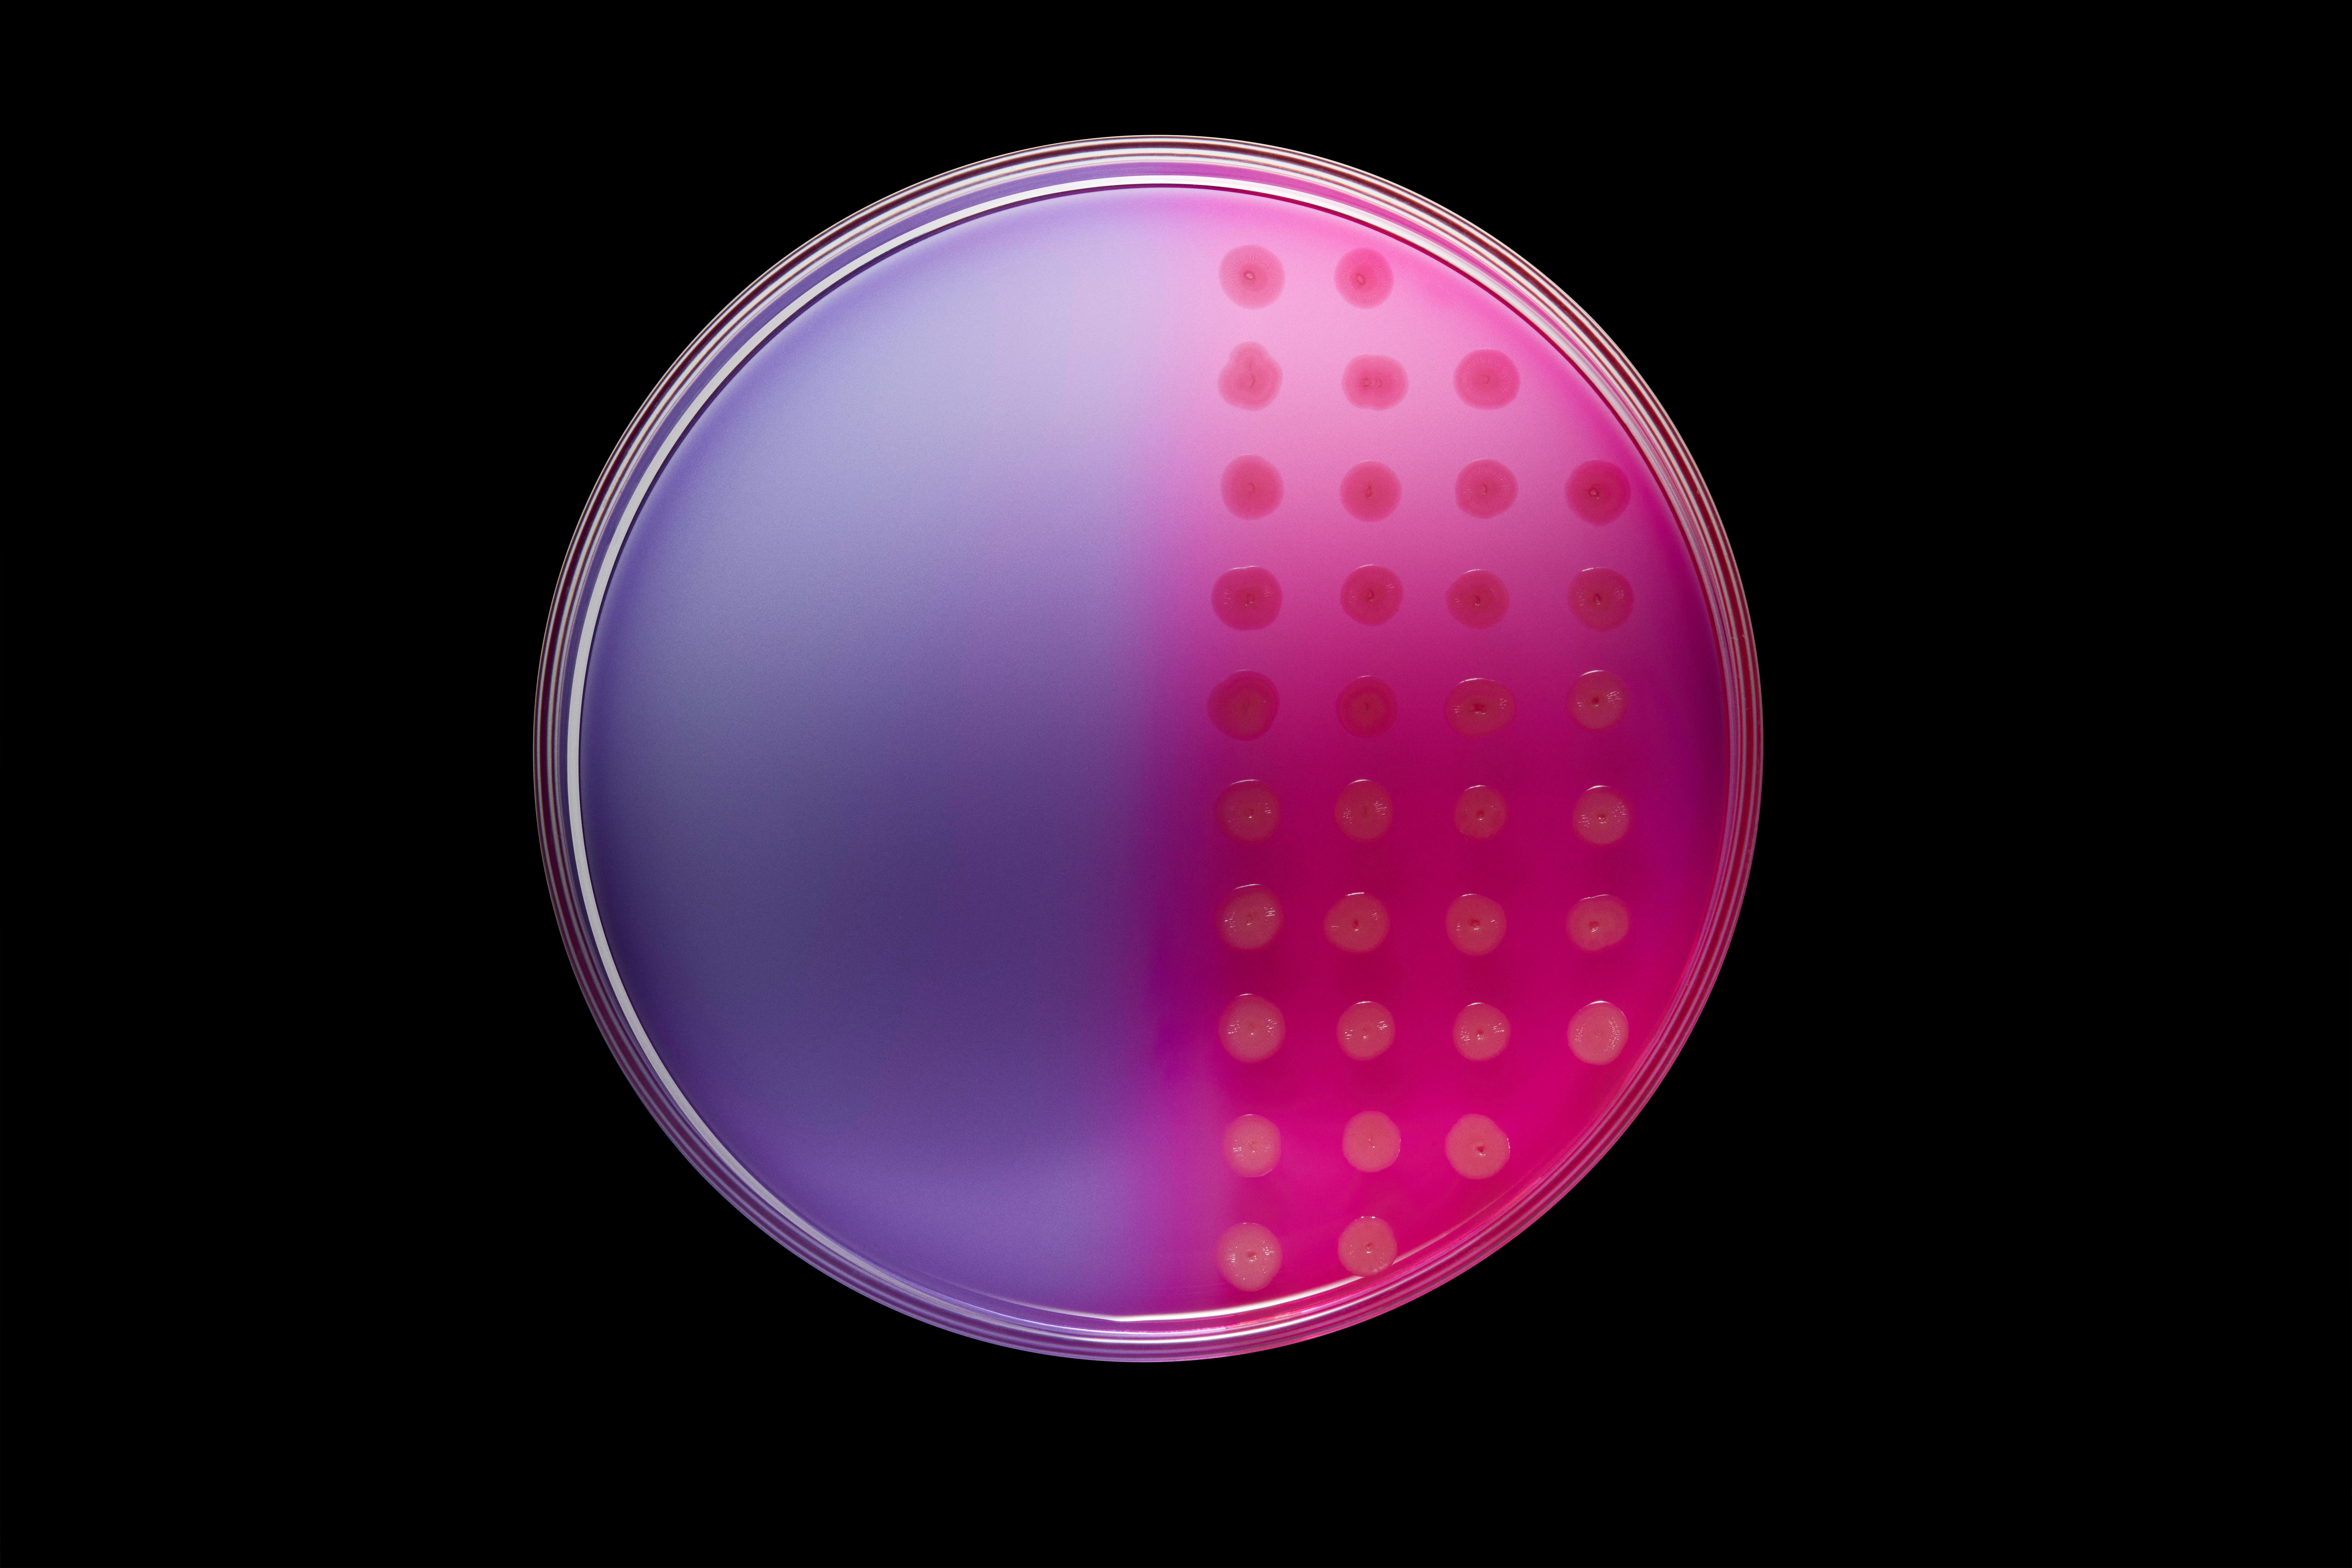 Eine Petrischale, die auf der linken Seite halb lila und unbesiedelt ist und auf der rechten Seite rosa und mit Reihen kleiner Bakterienflecken besiedelt ist, vor einem schwarzen Hintergrund.